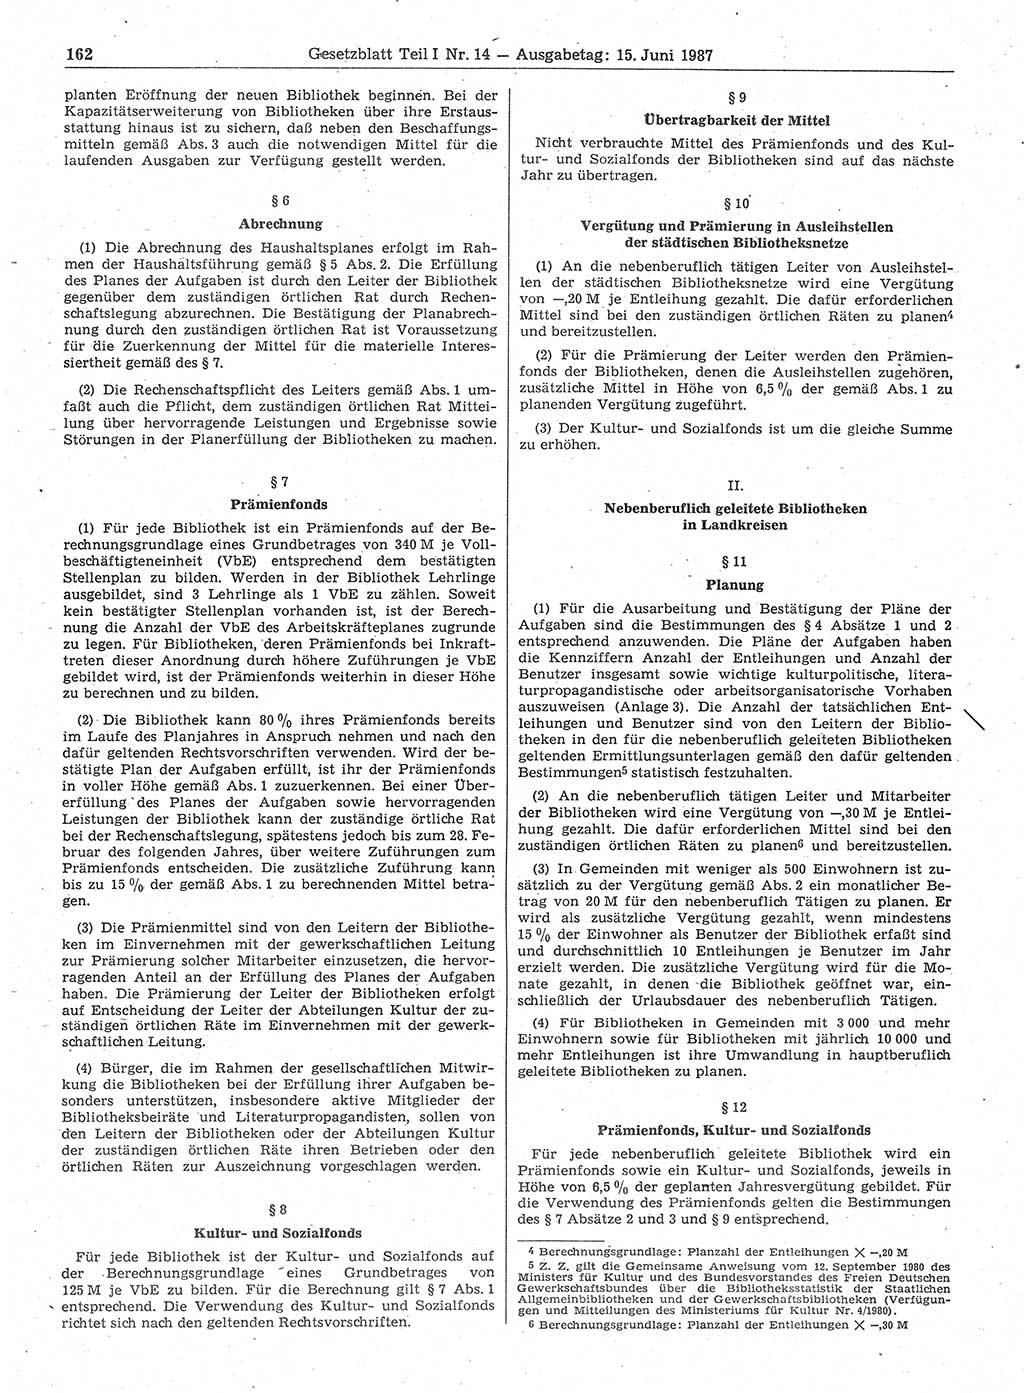 Gesetzblatt (GBl.) der Deutschen Demokratischen Republik (DDR) Teil Ⅰ 1987, Seite 162 (GBl. DDR Ⅰ 1987, S. 162)